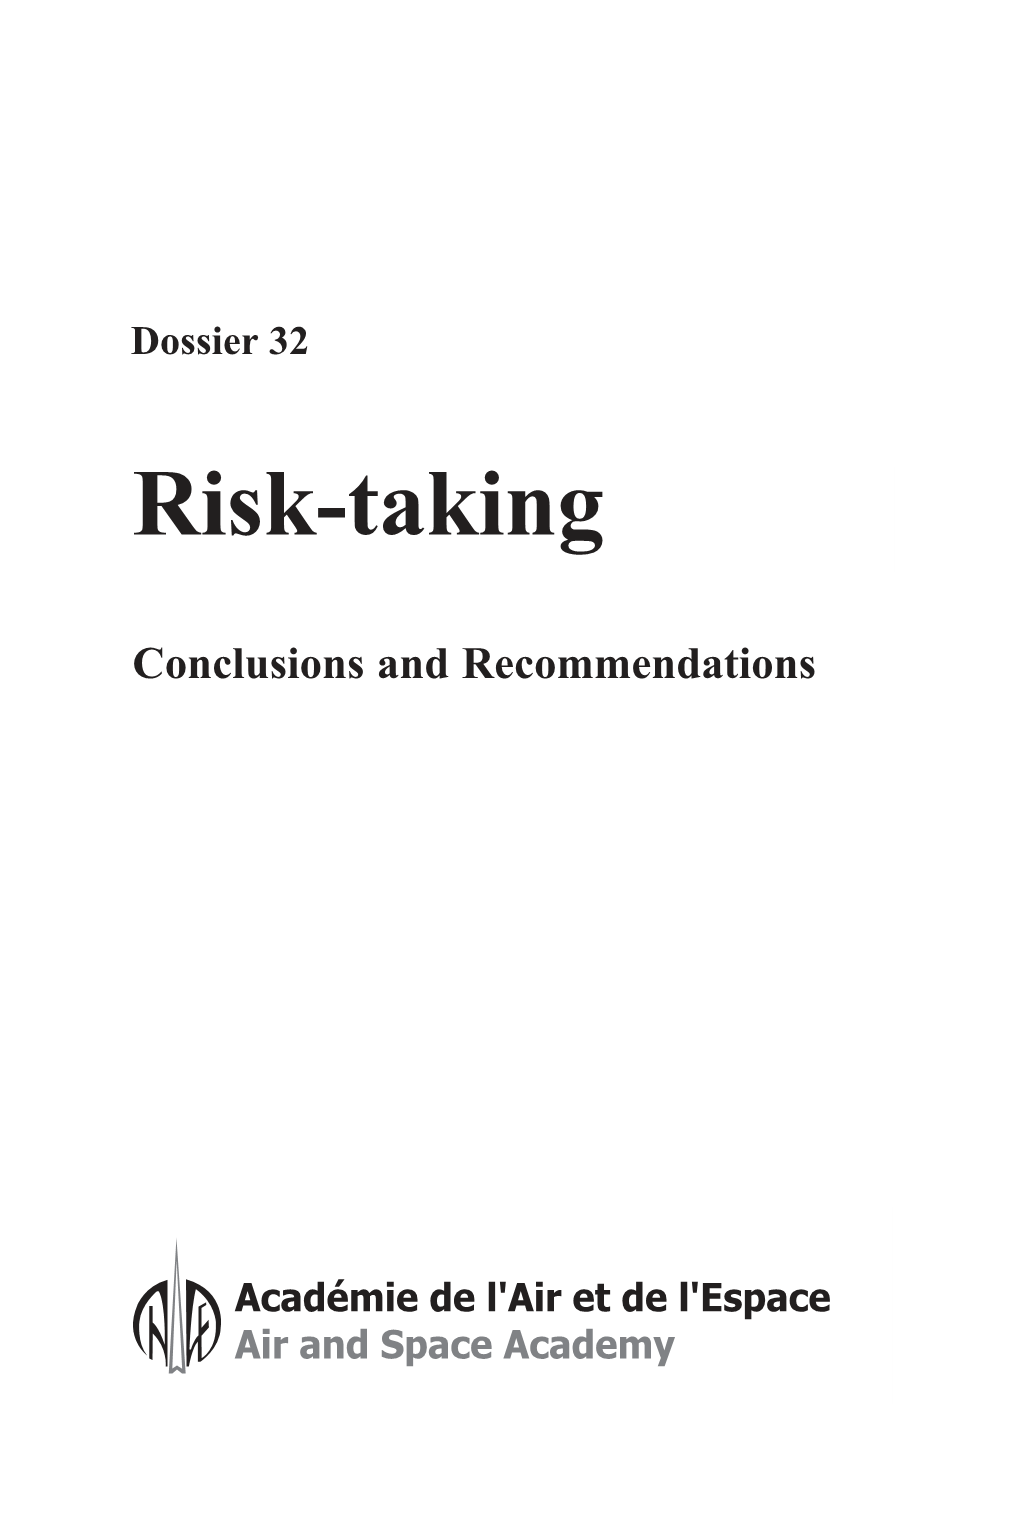 Doss 32 Risk-Taking.Qxd